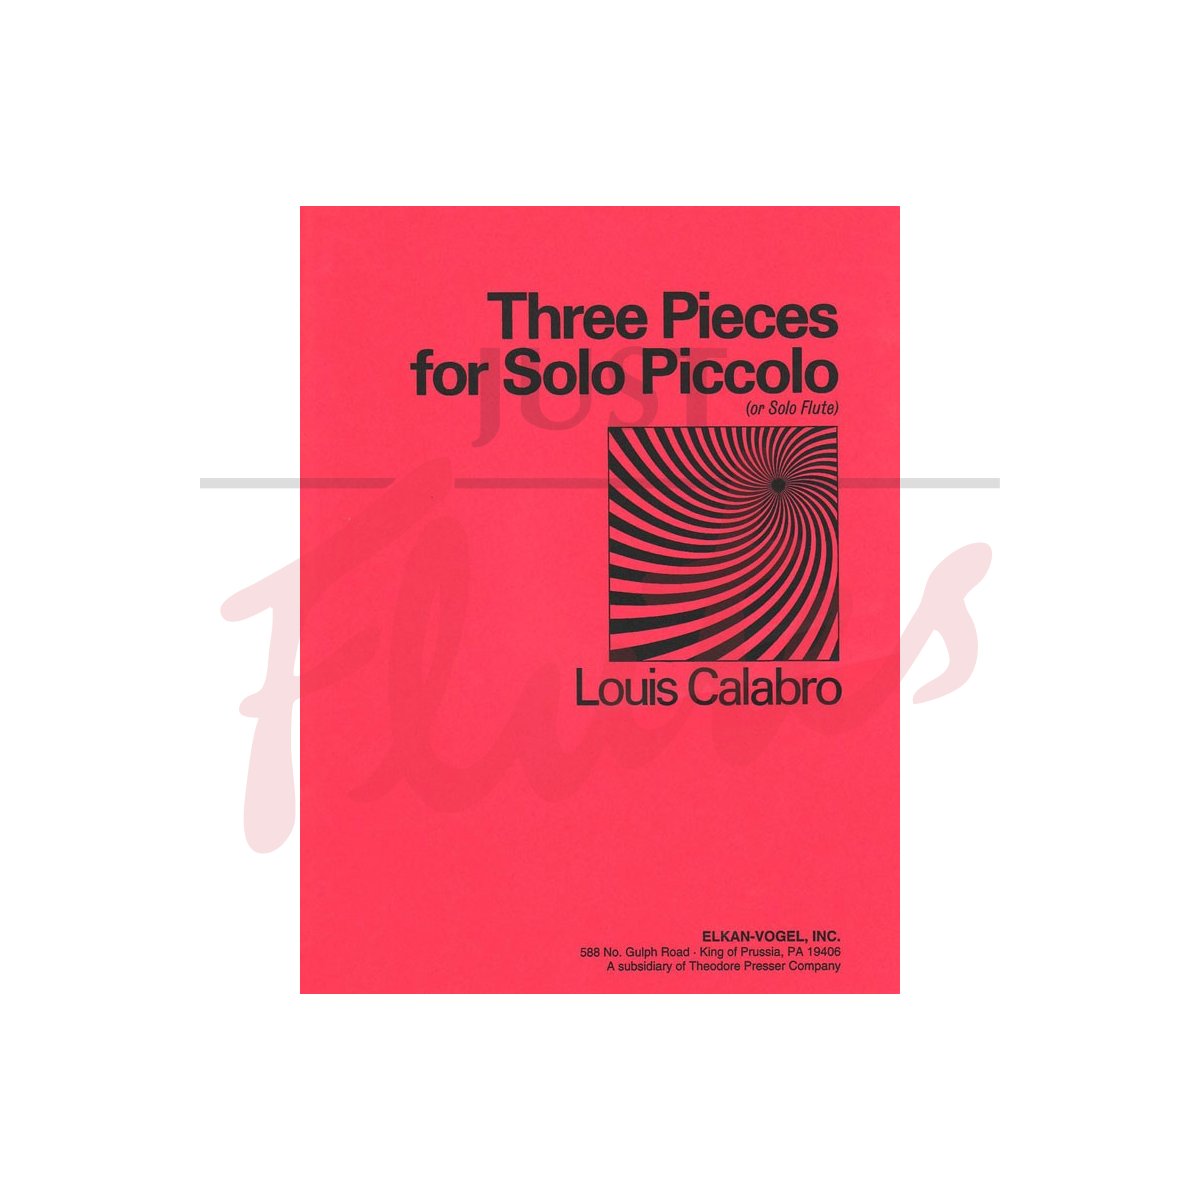 Three Pieces for Solo Piccolo